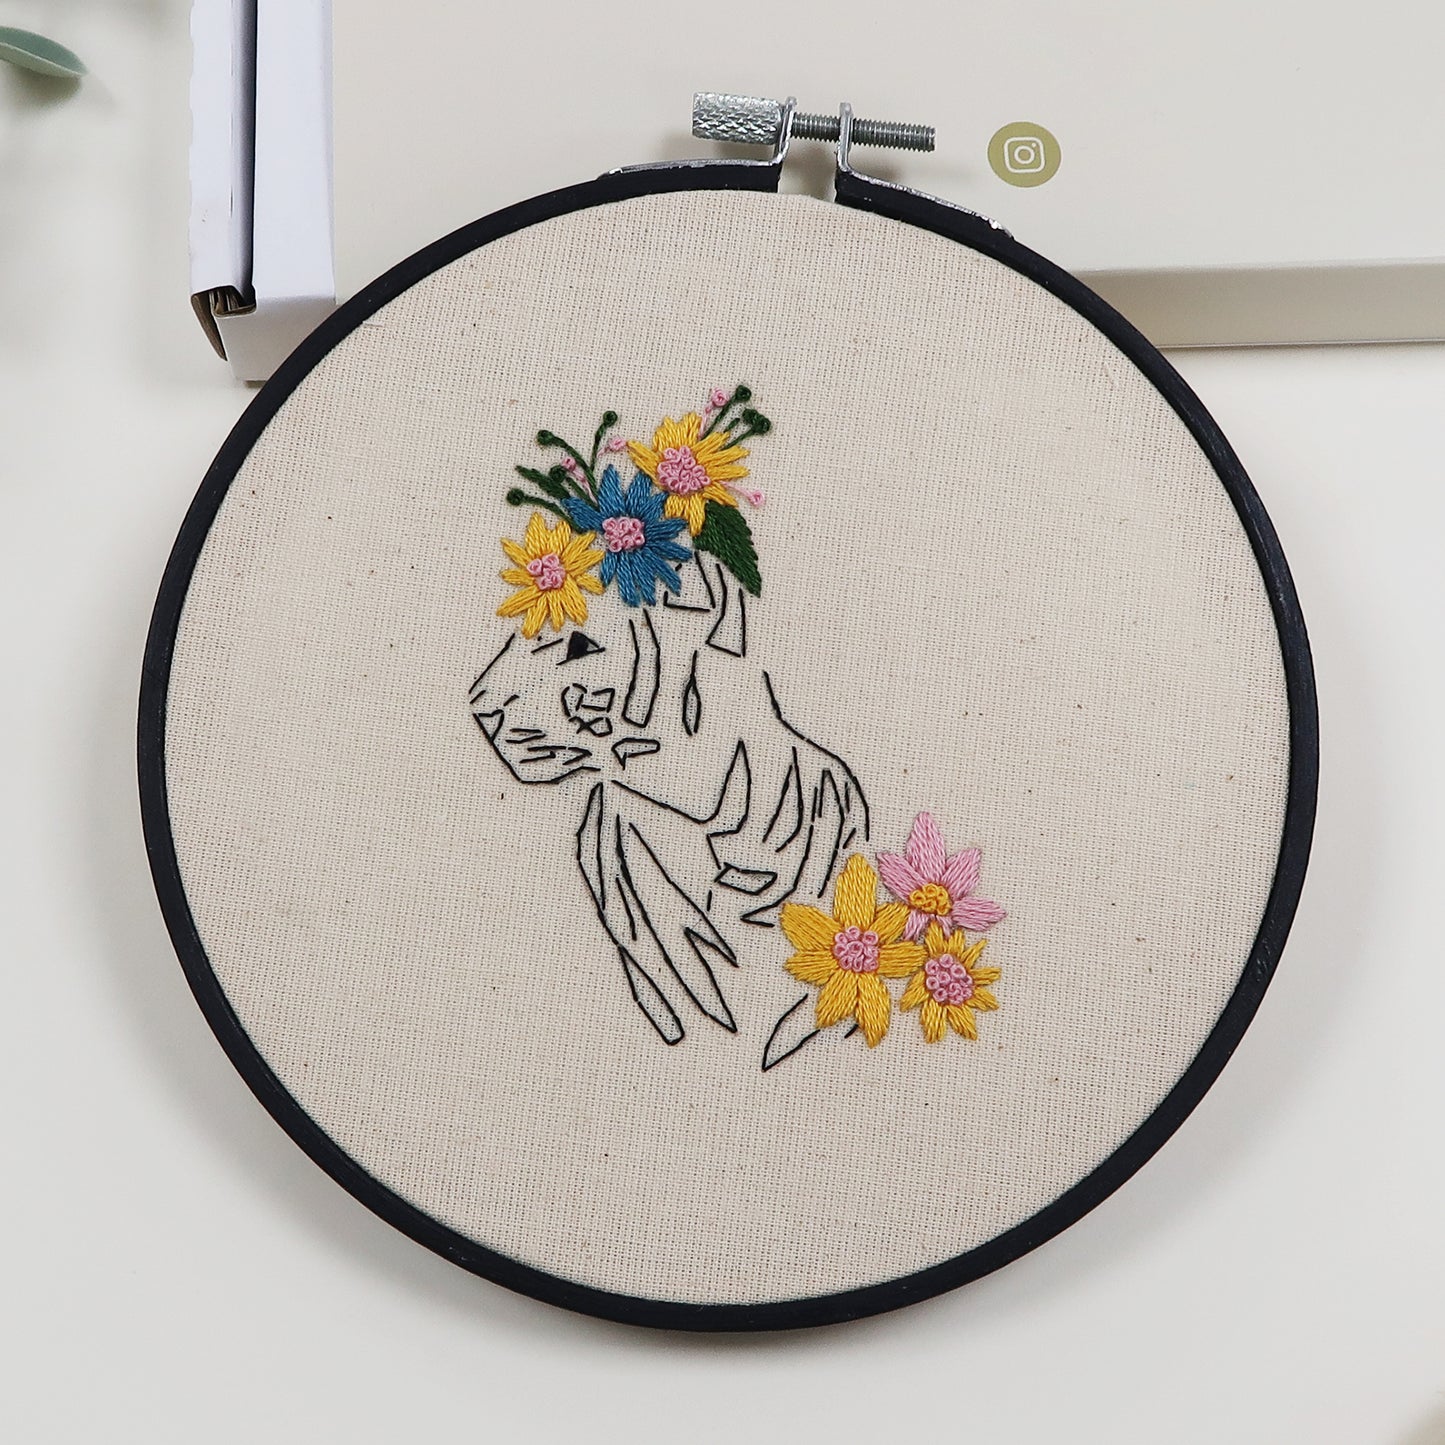 Hear Me Roar - Tiger Embroidery Kit